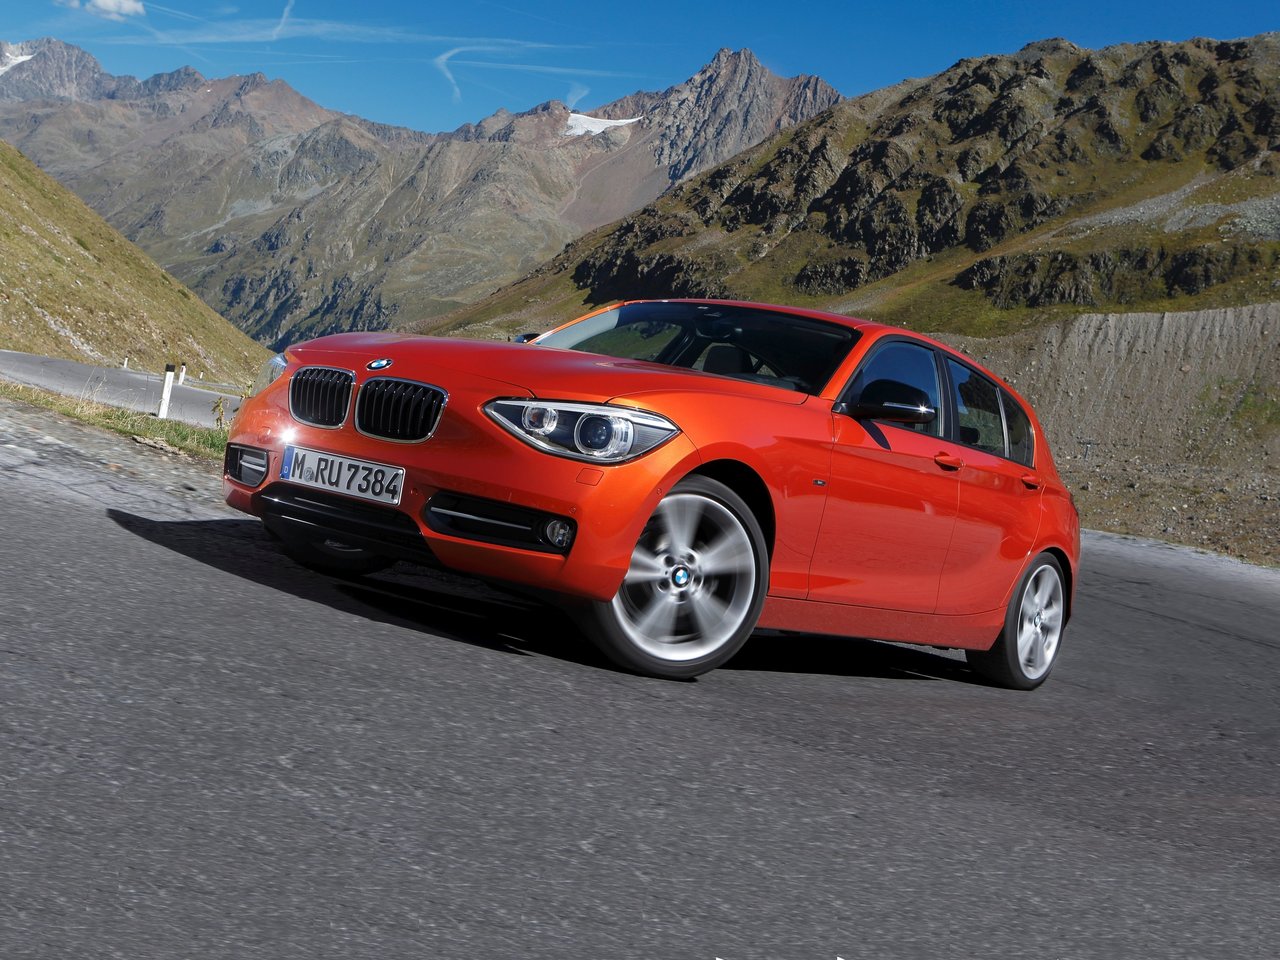 Расход газа шести комплектаций хэтчбека пять дверей BMW 1 серия. Разница стоимости заправки газом и бензином. Автономный пробег до и после установки ГБО.